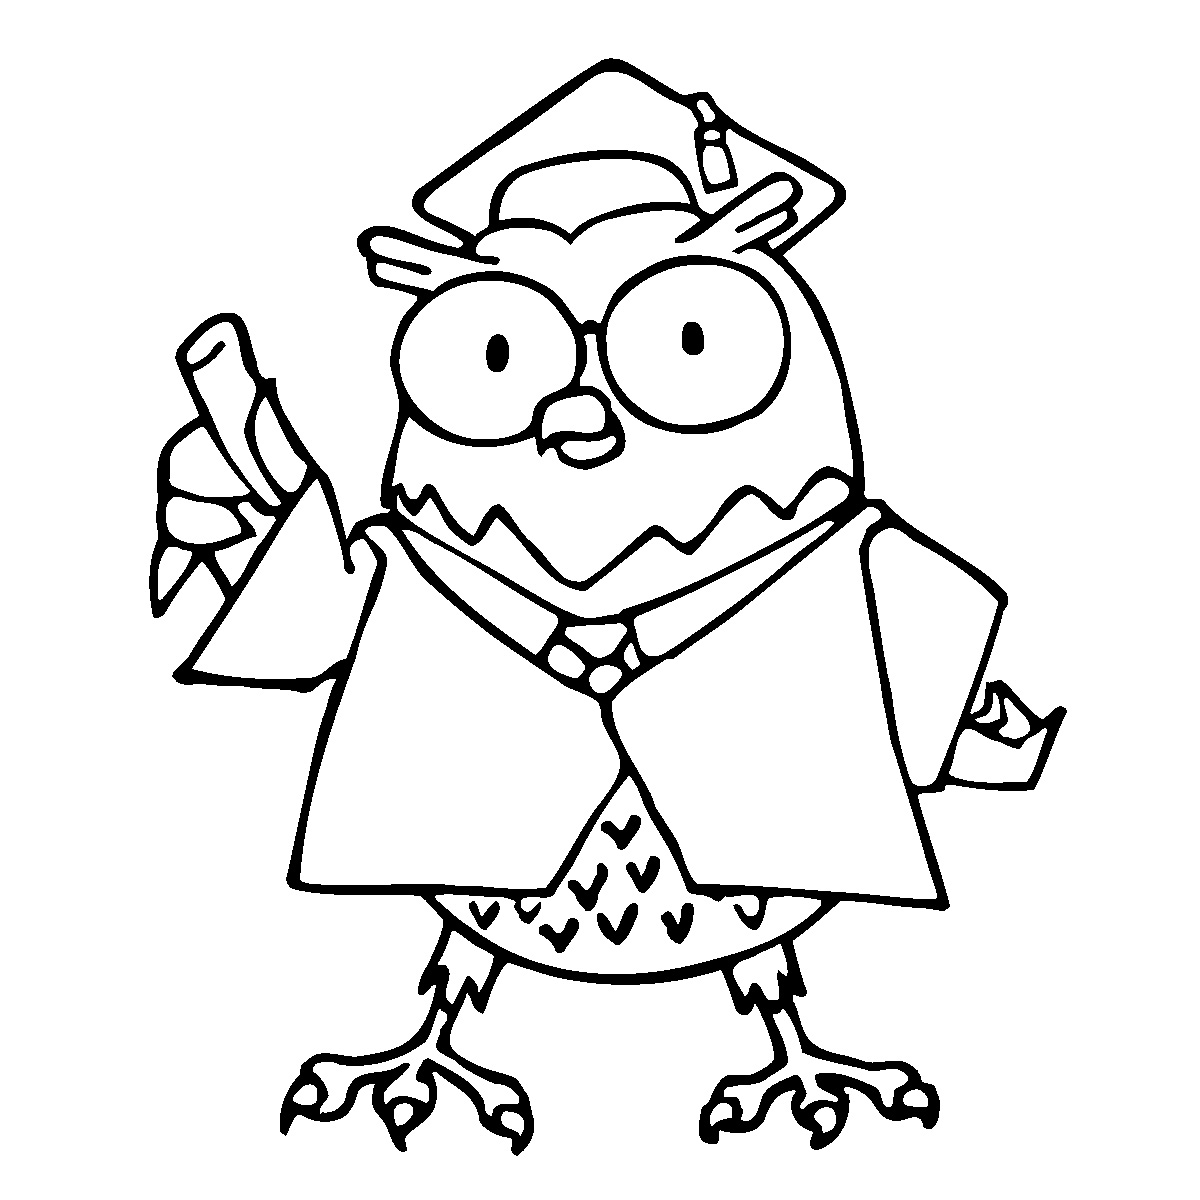 Cartoon Owl Face - Clipart library